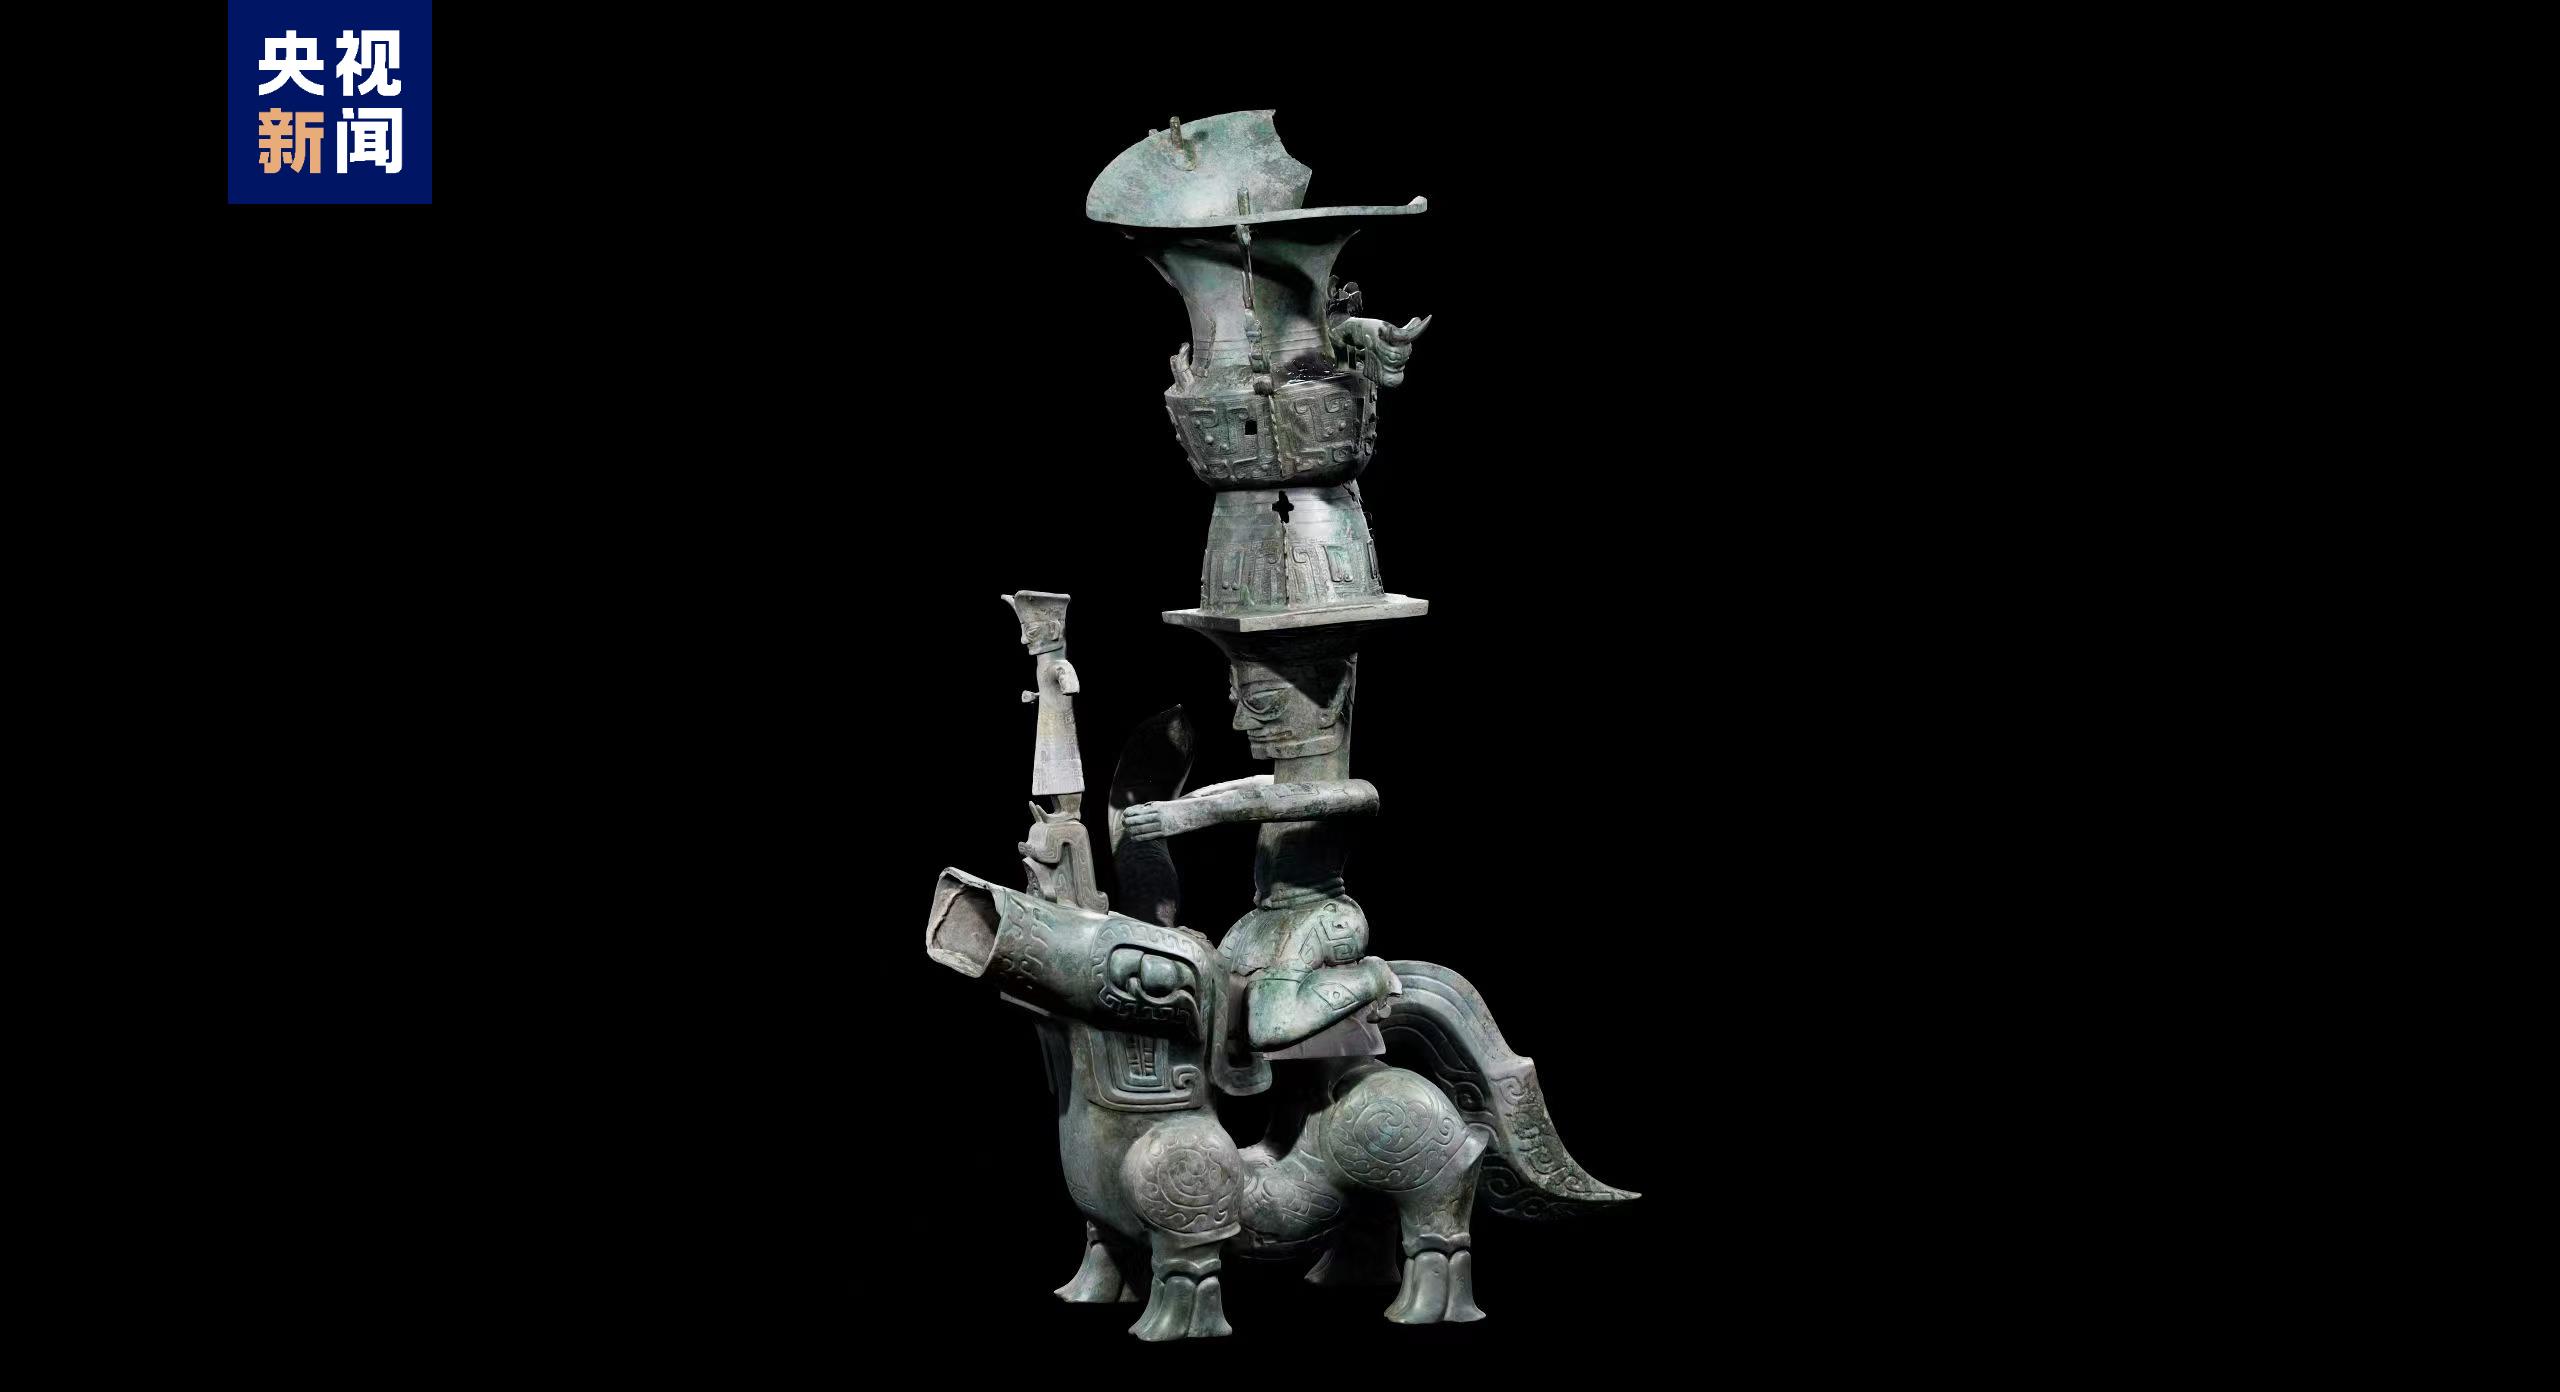 三星堆顶尊跪坐人像和青铜神兽的三维模型拼接成功